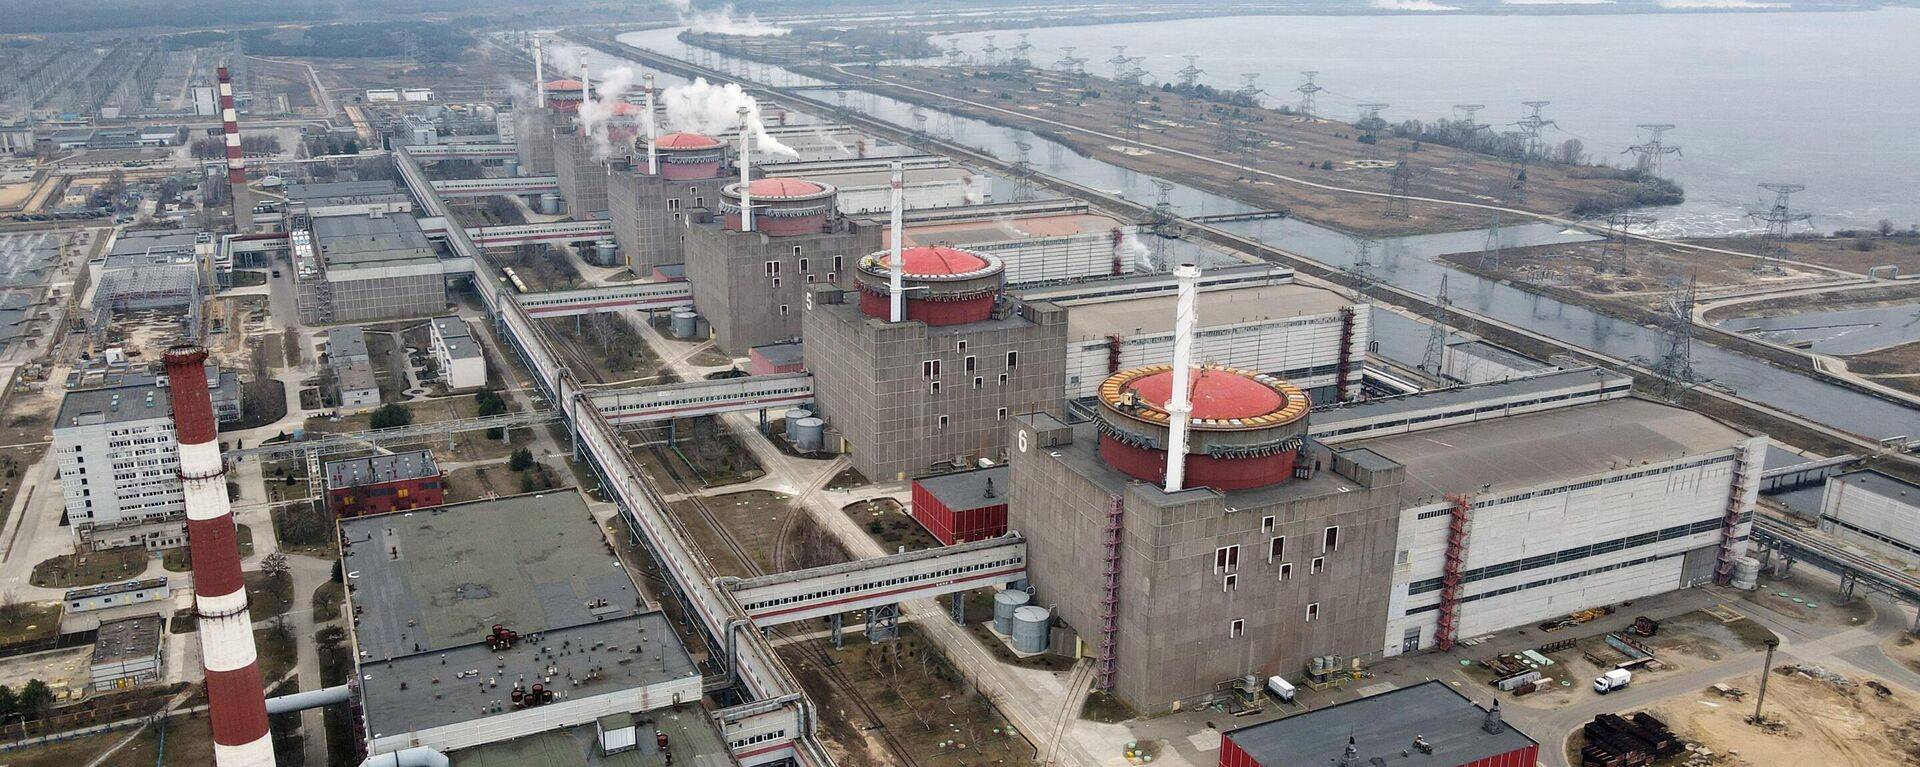 La planta nuclear de Zaporiyia - Sputnik Mundo, 1920, 19.08.2022